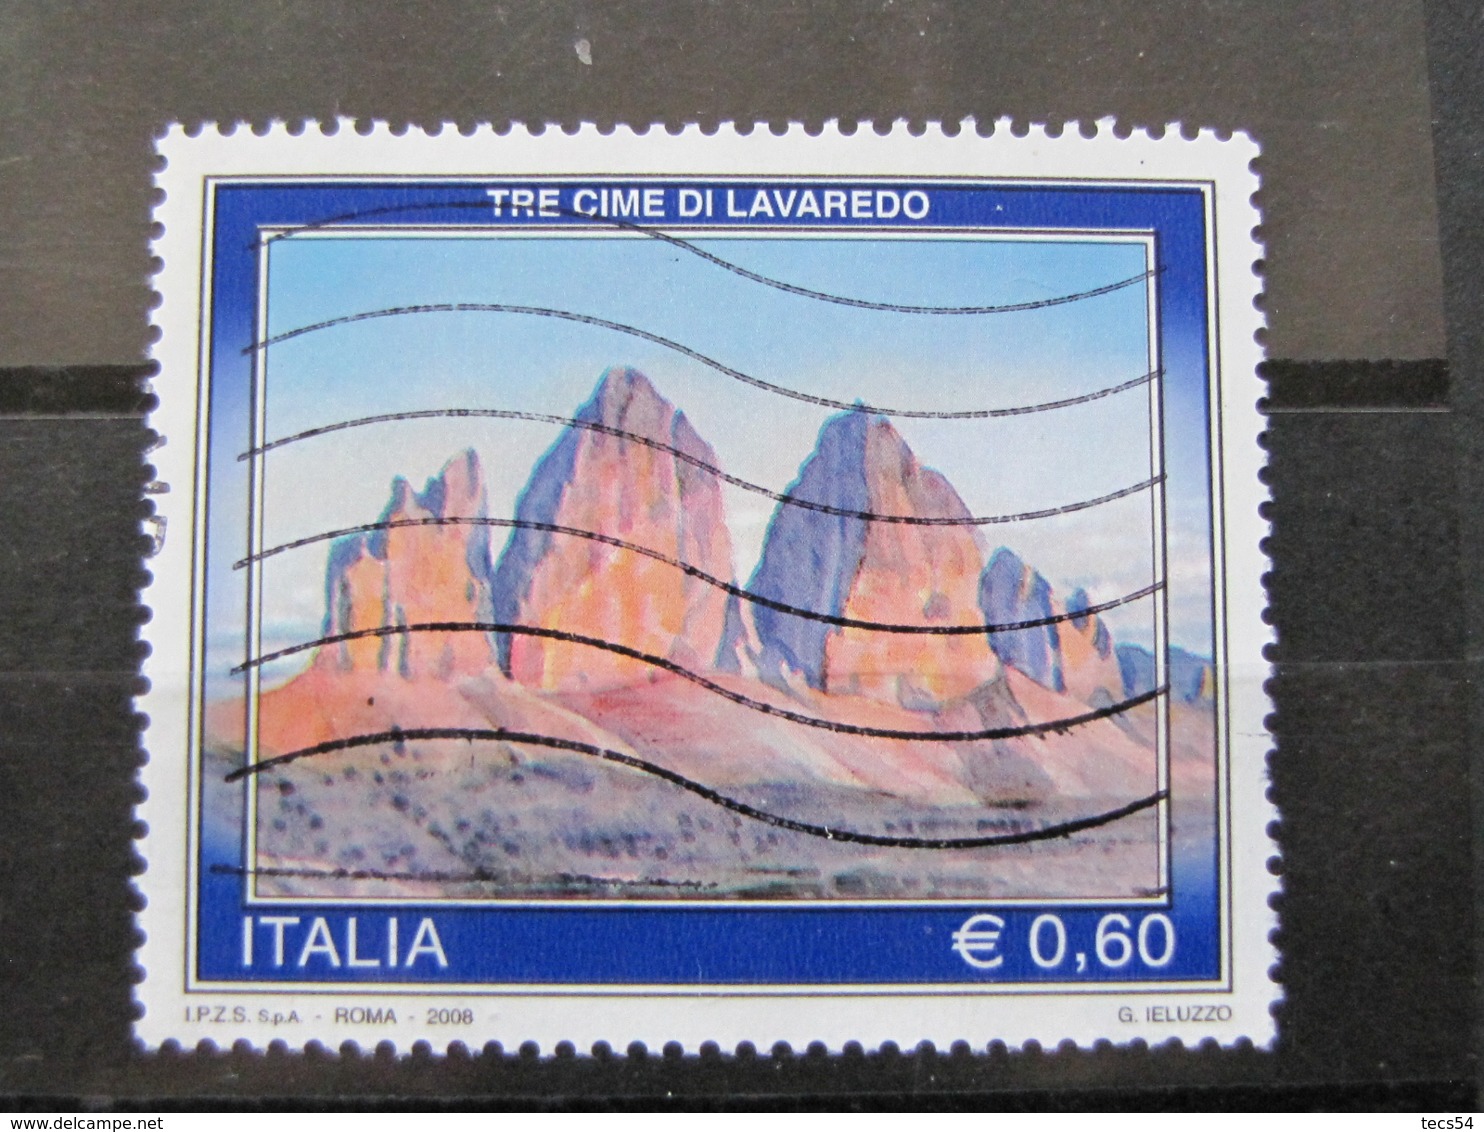 *ITALIA* USATI 2008 - TURISTICA TRE CIME LAVAREDO - SASSONE 3050 - LUSSO/FIOR DI STAMPA - 2001-10: Usati